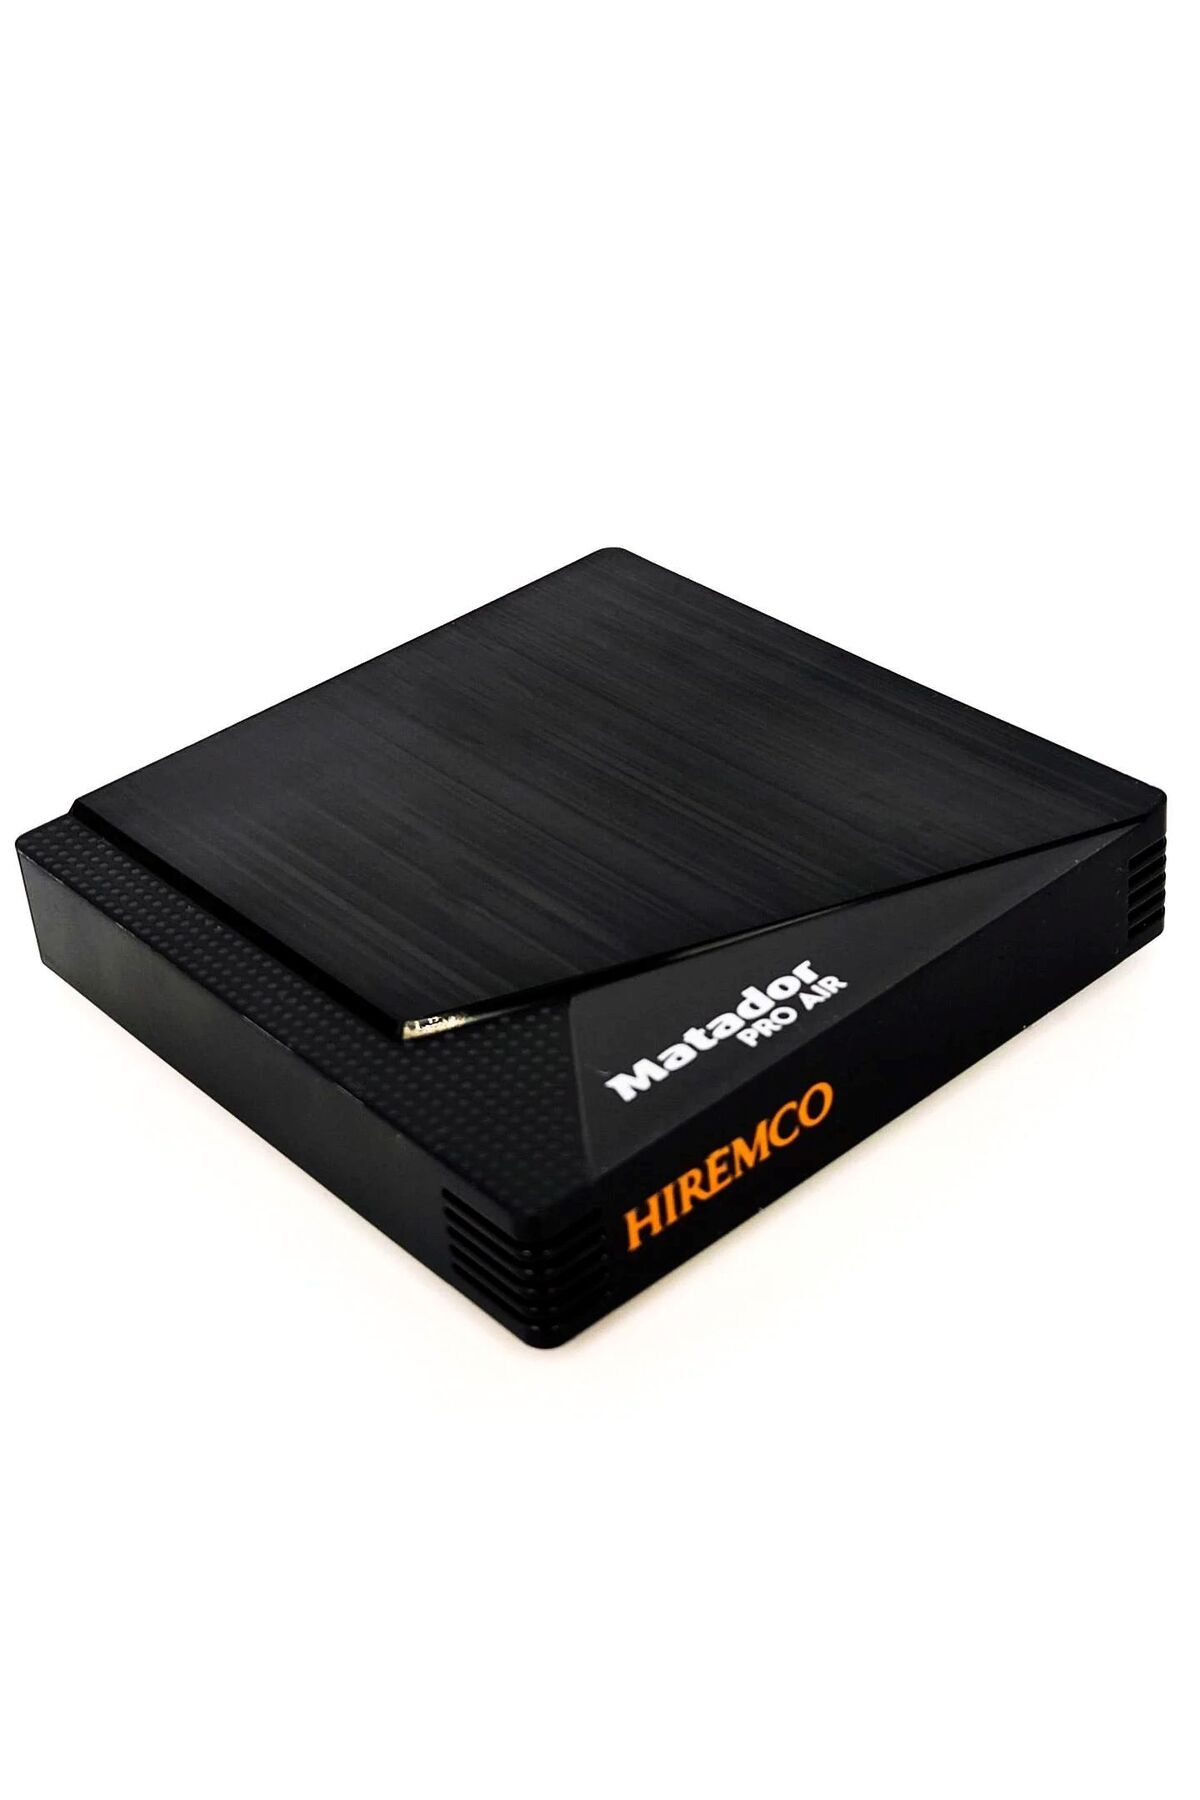 Hiremco Matador Pro Air 4k Android10 Tv Box